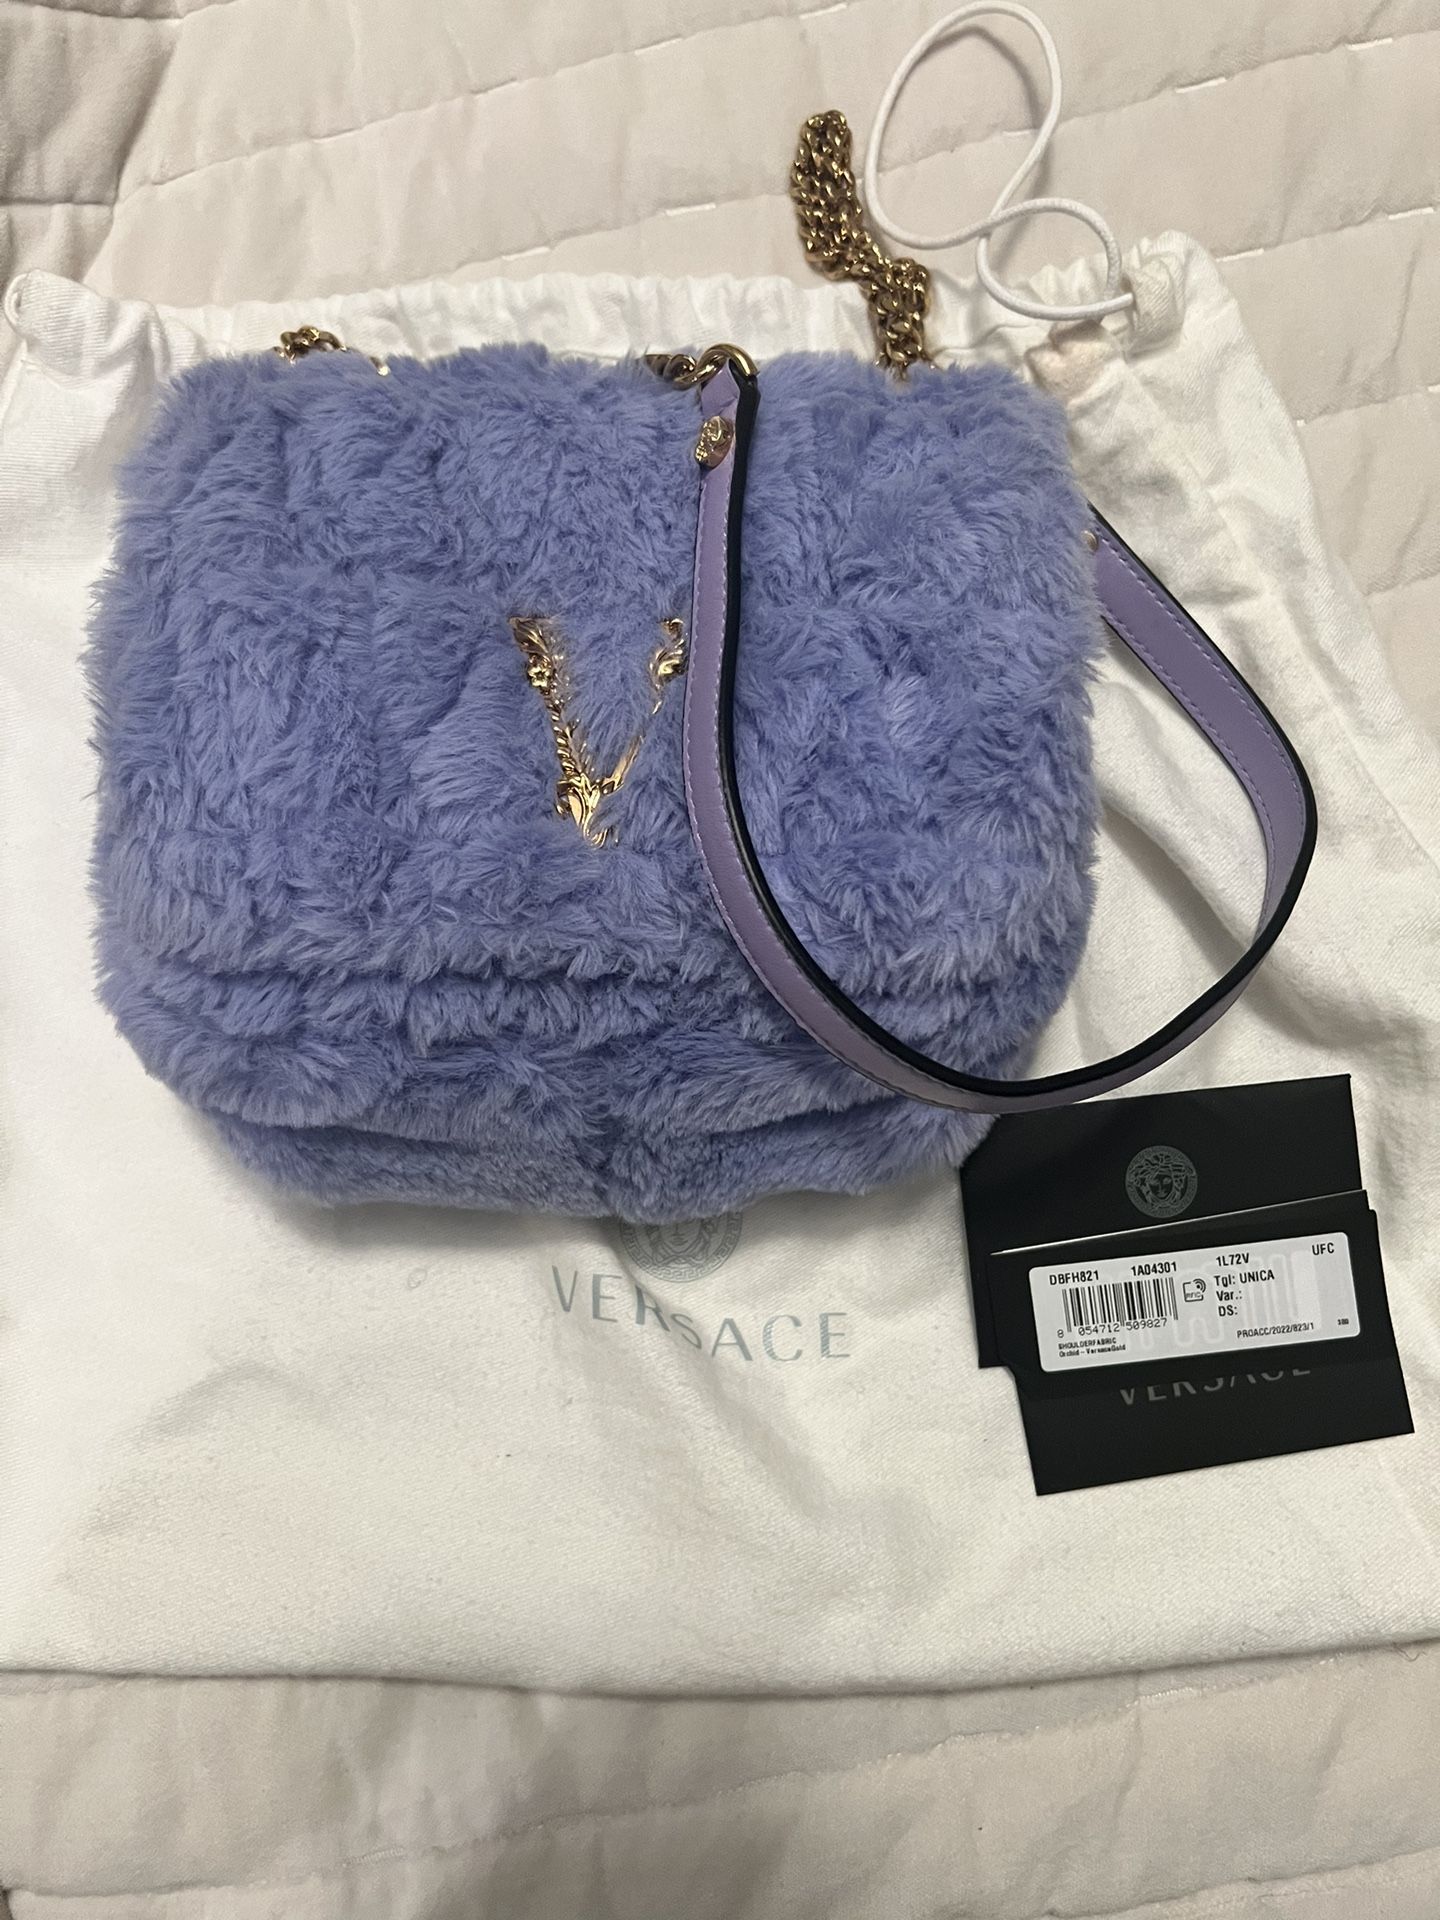 Versace Purple Faux Fur Hand Bag. Authentic 